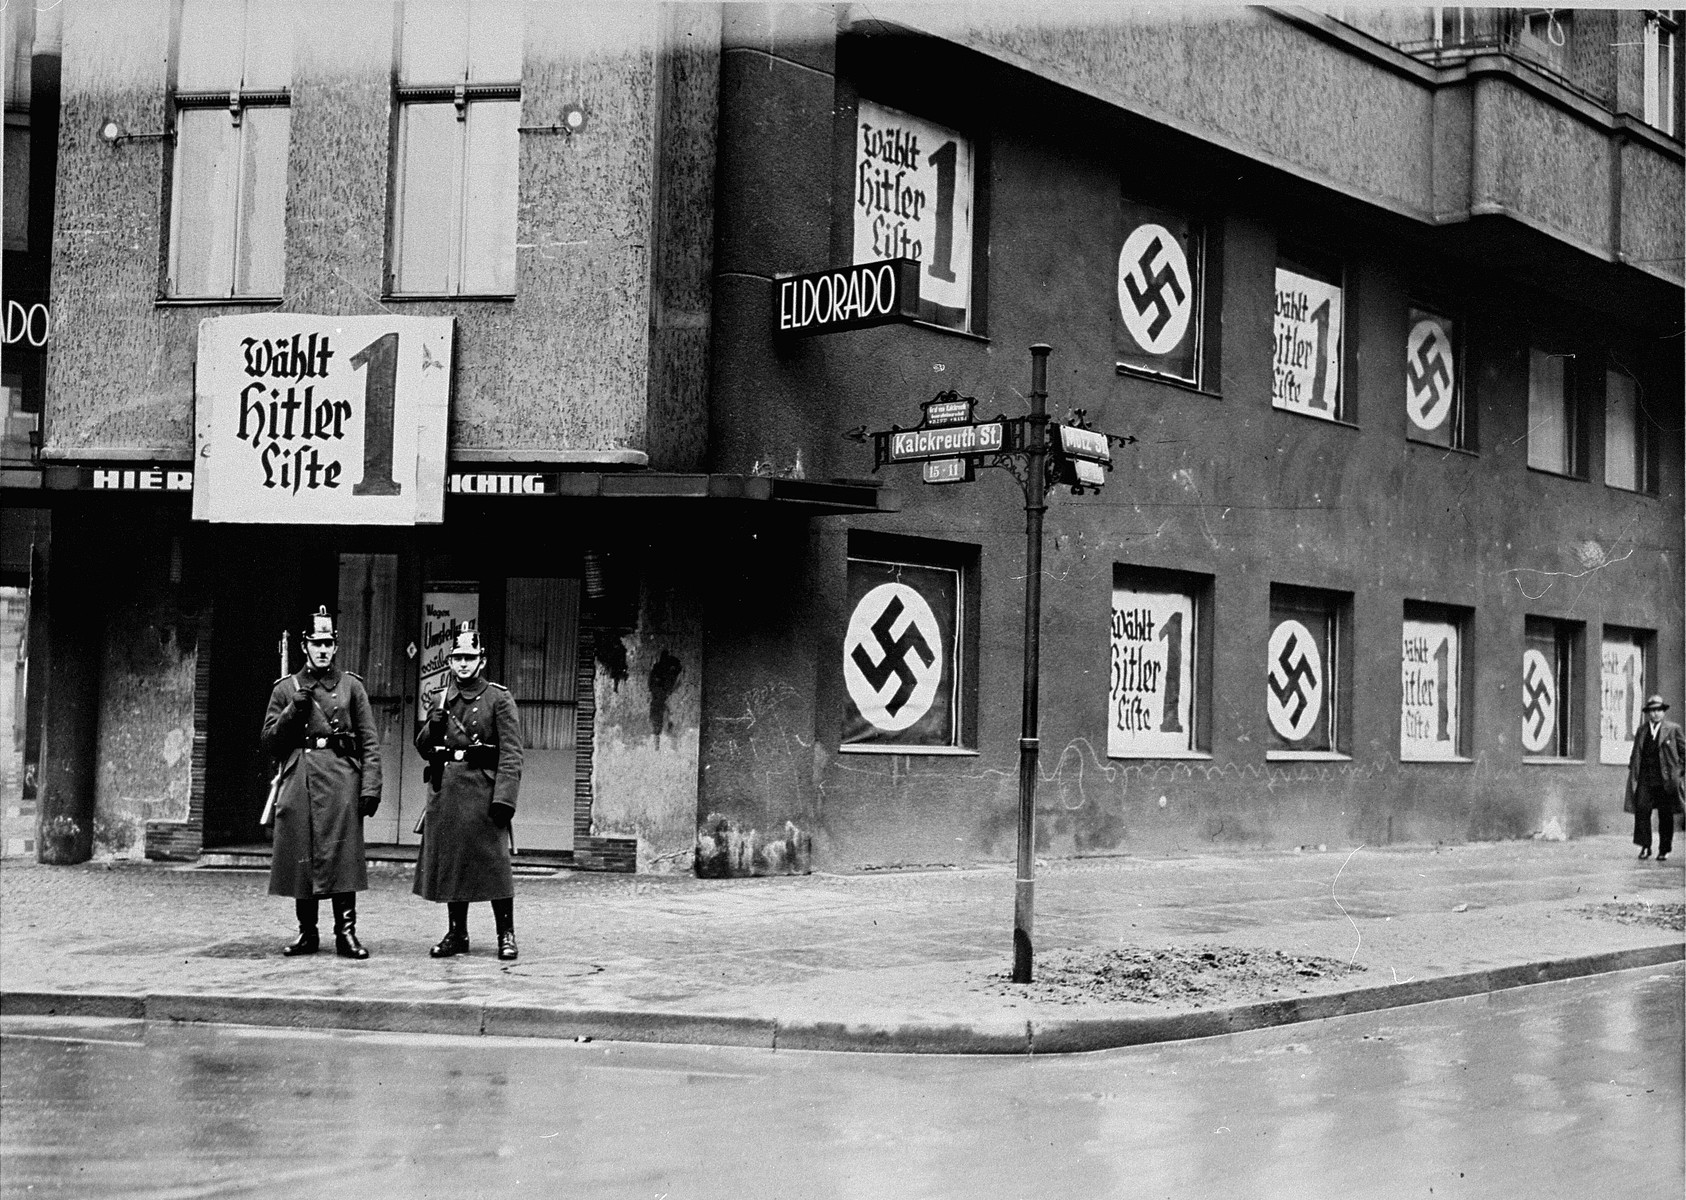 Eldorado i Berlin efter Hitlers magtovertagelse